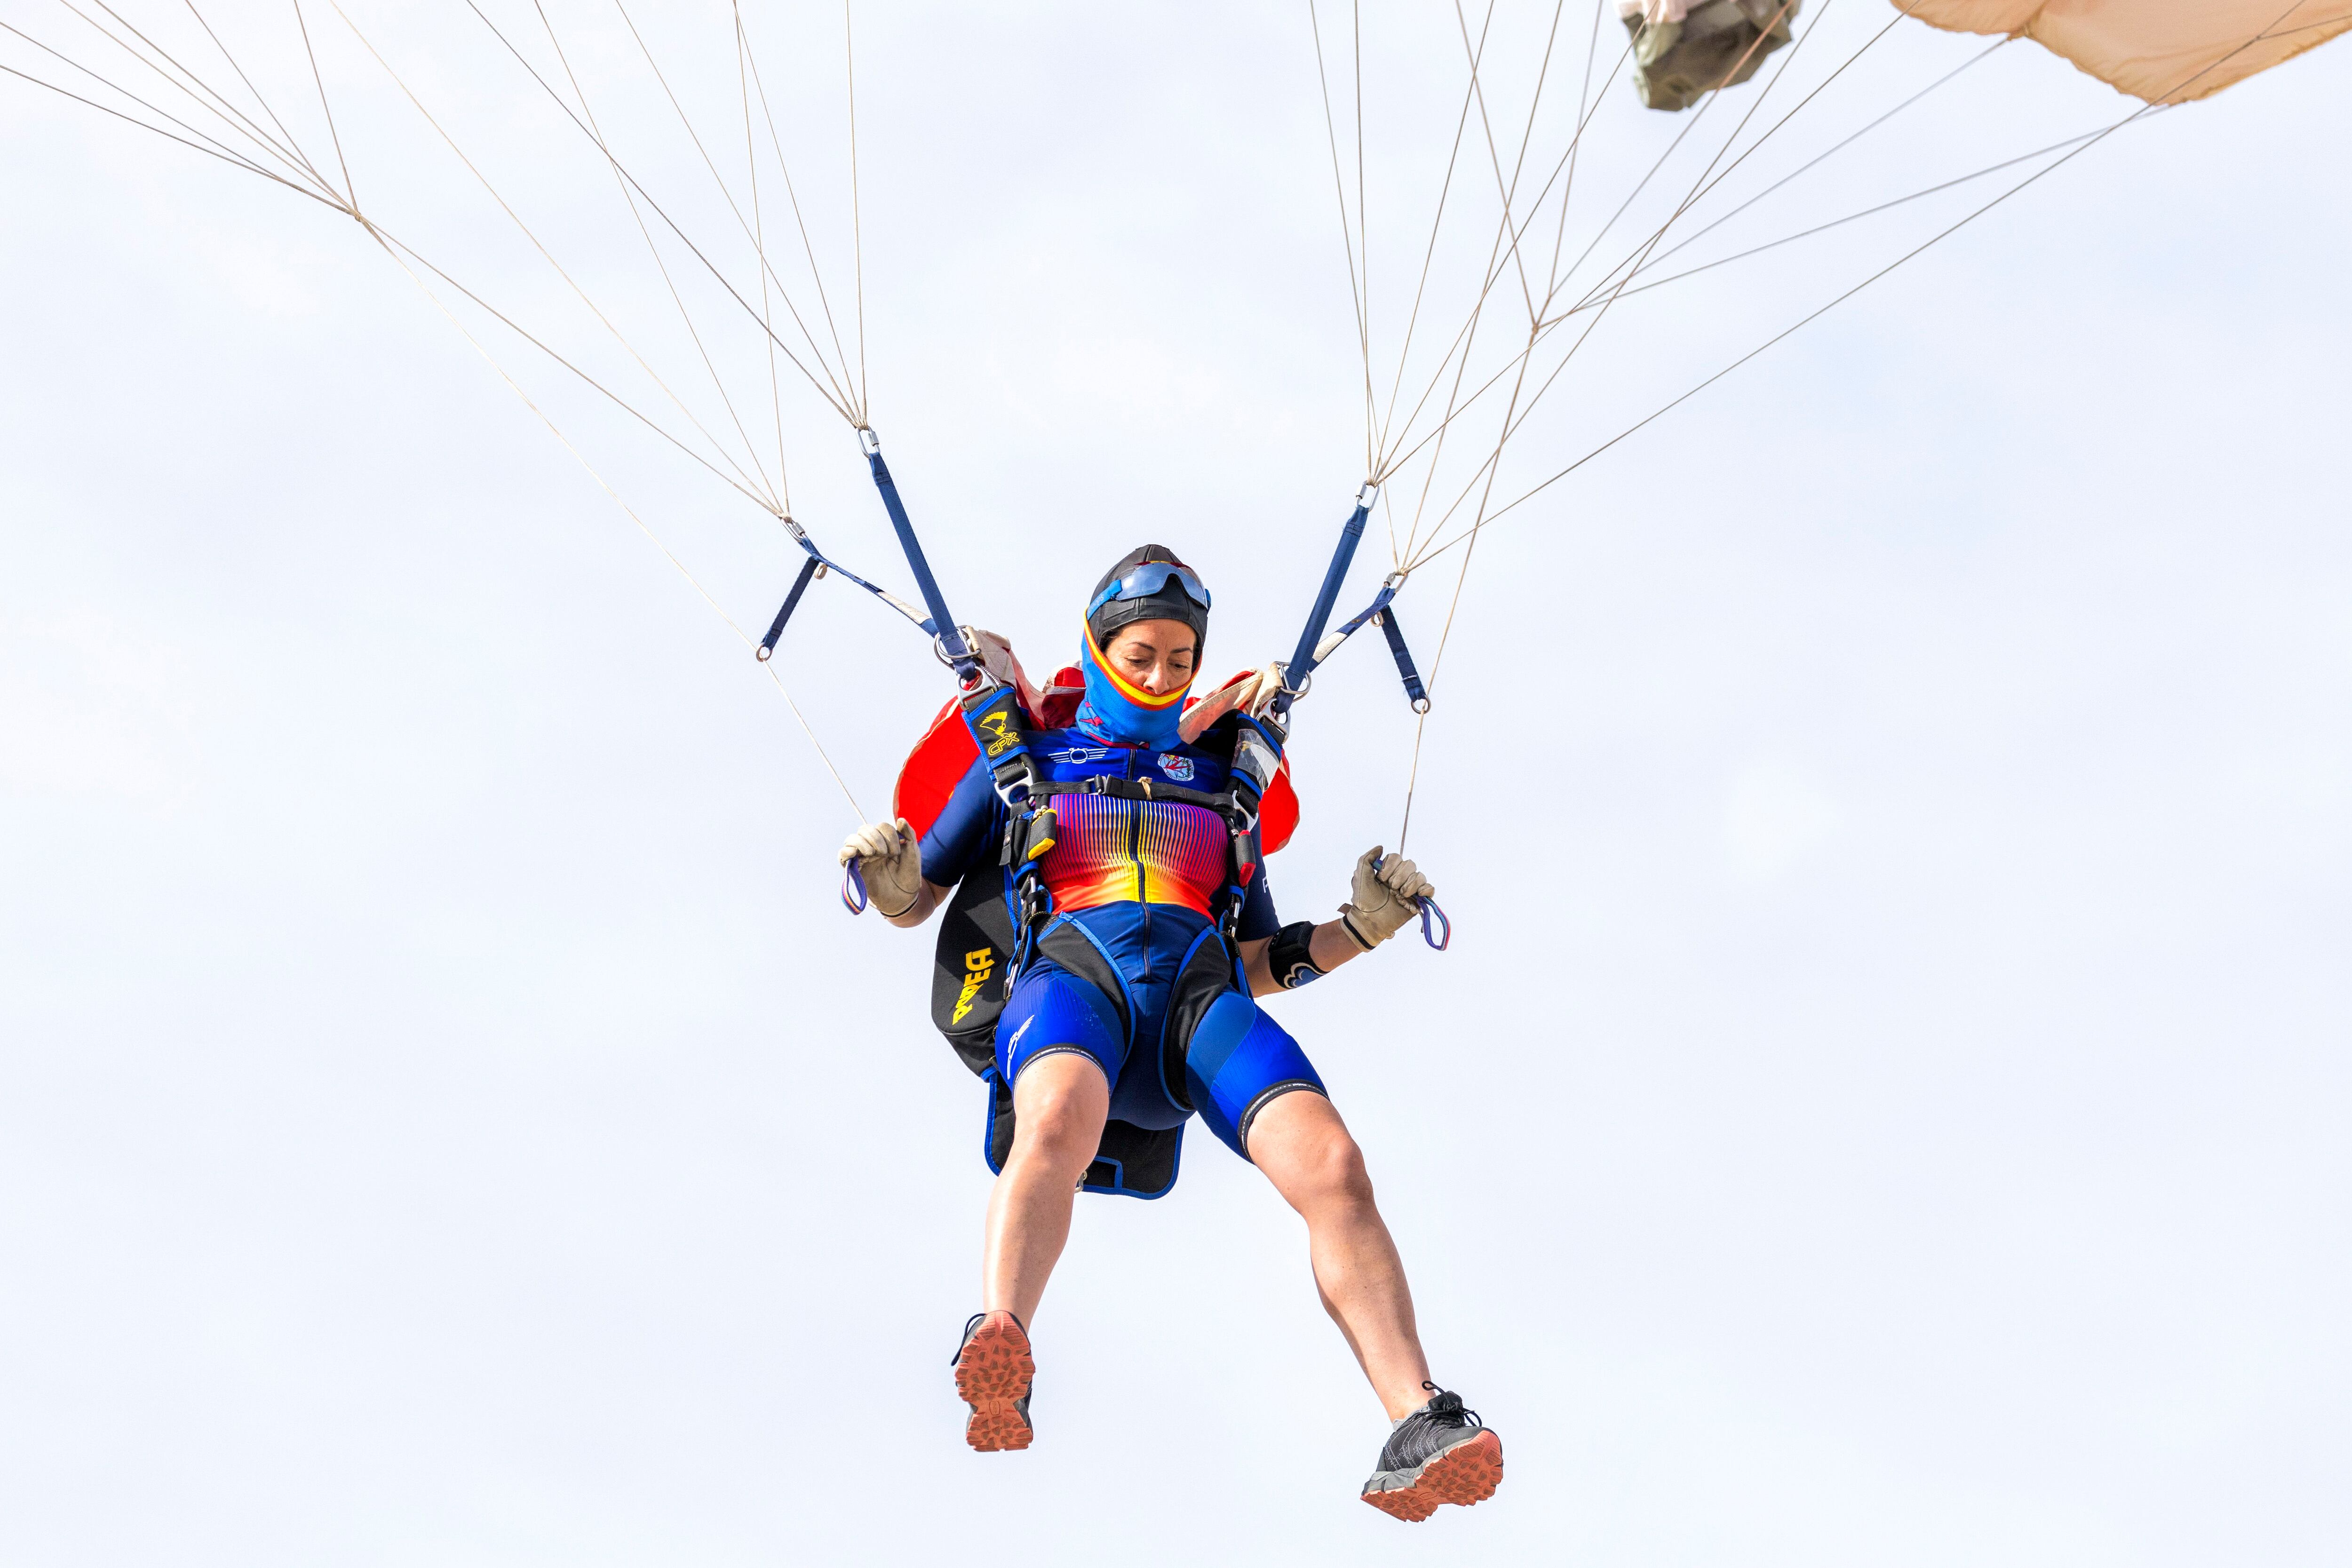 Los paracaidistas tienen que dirigir su posición hasta una diana gigante y acolchada, conocida como foso, pilotando el paracaídas con sendos brazos.